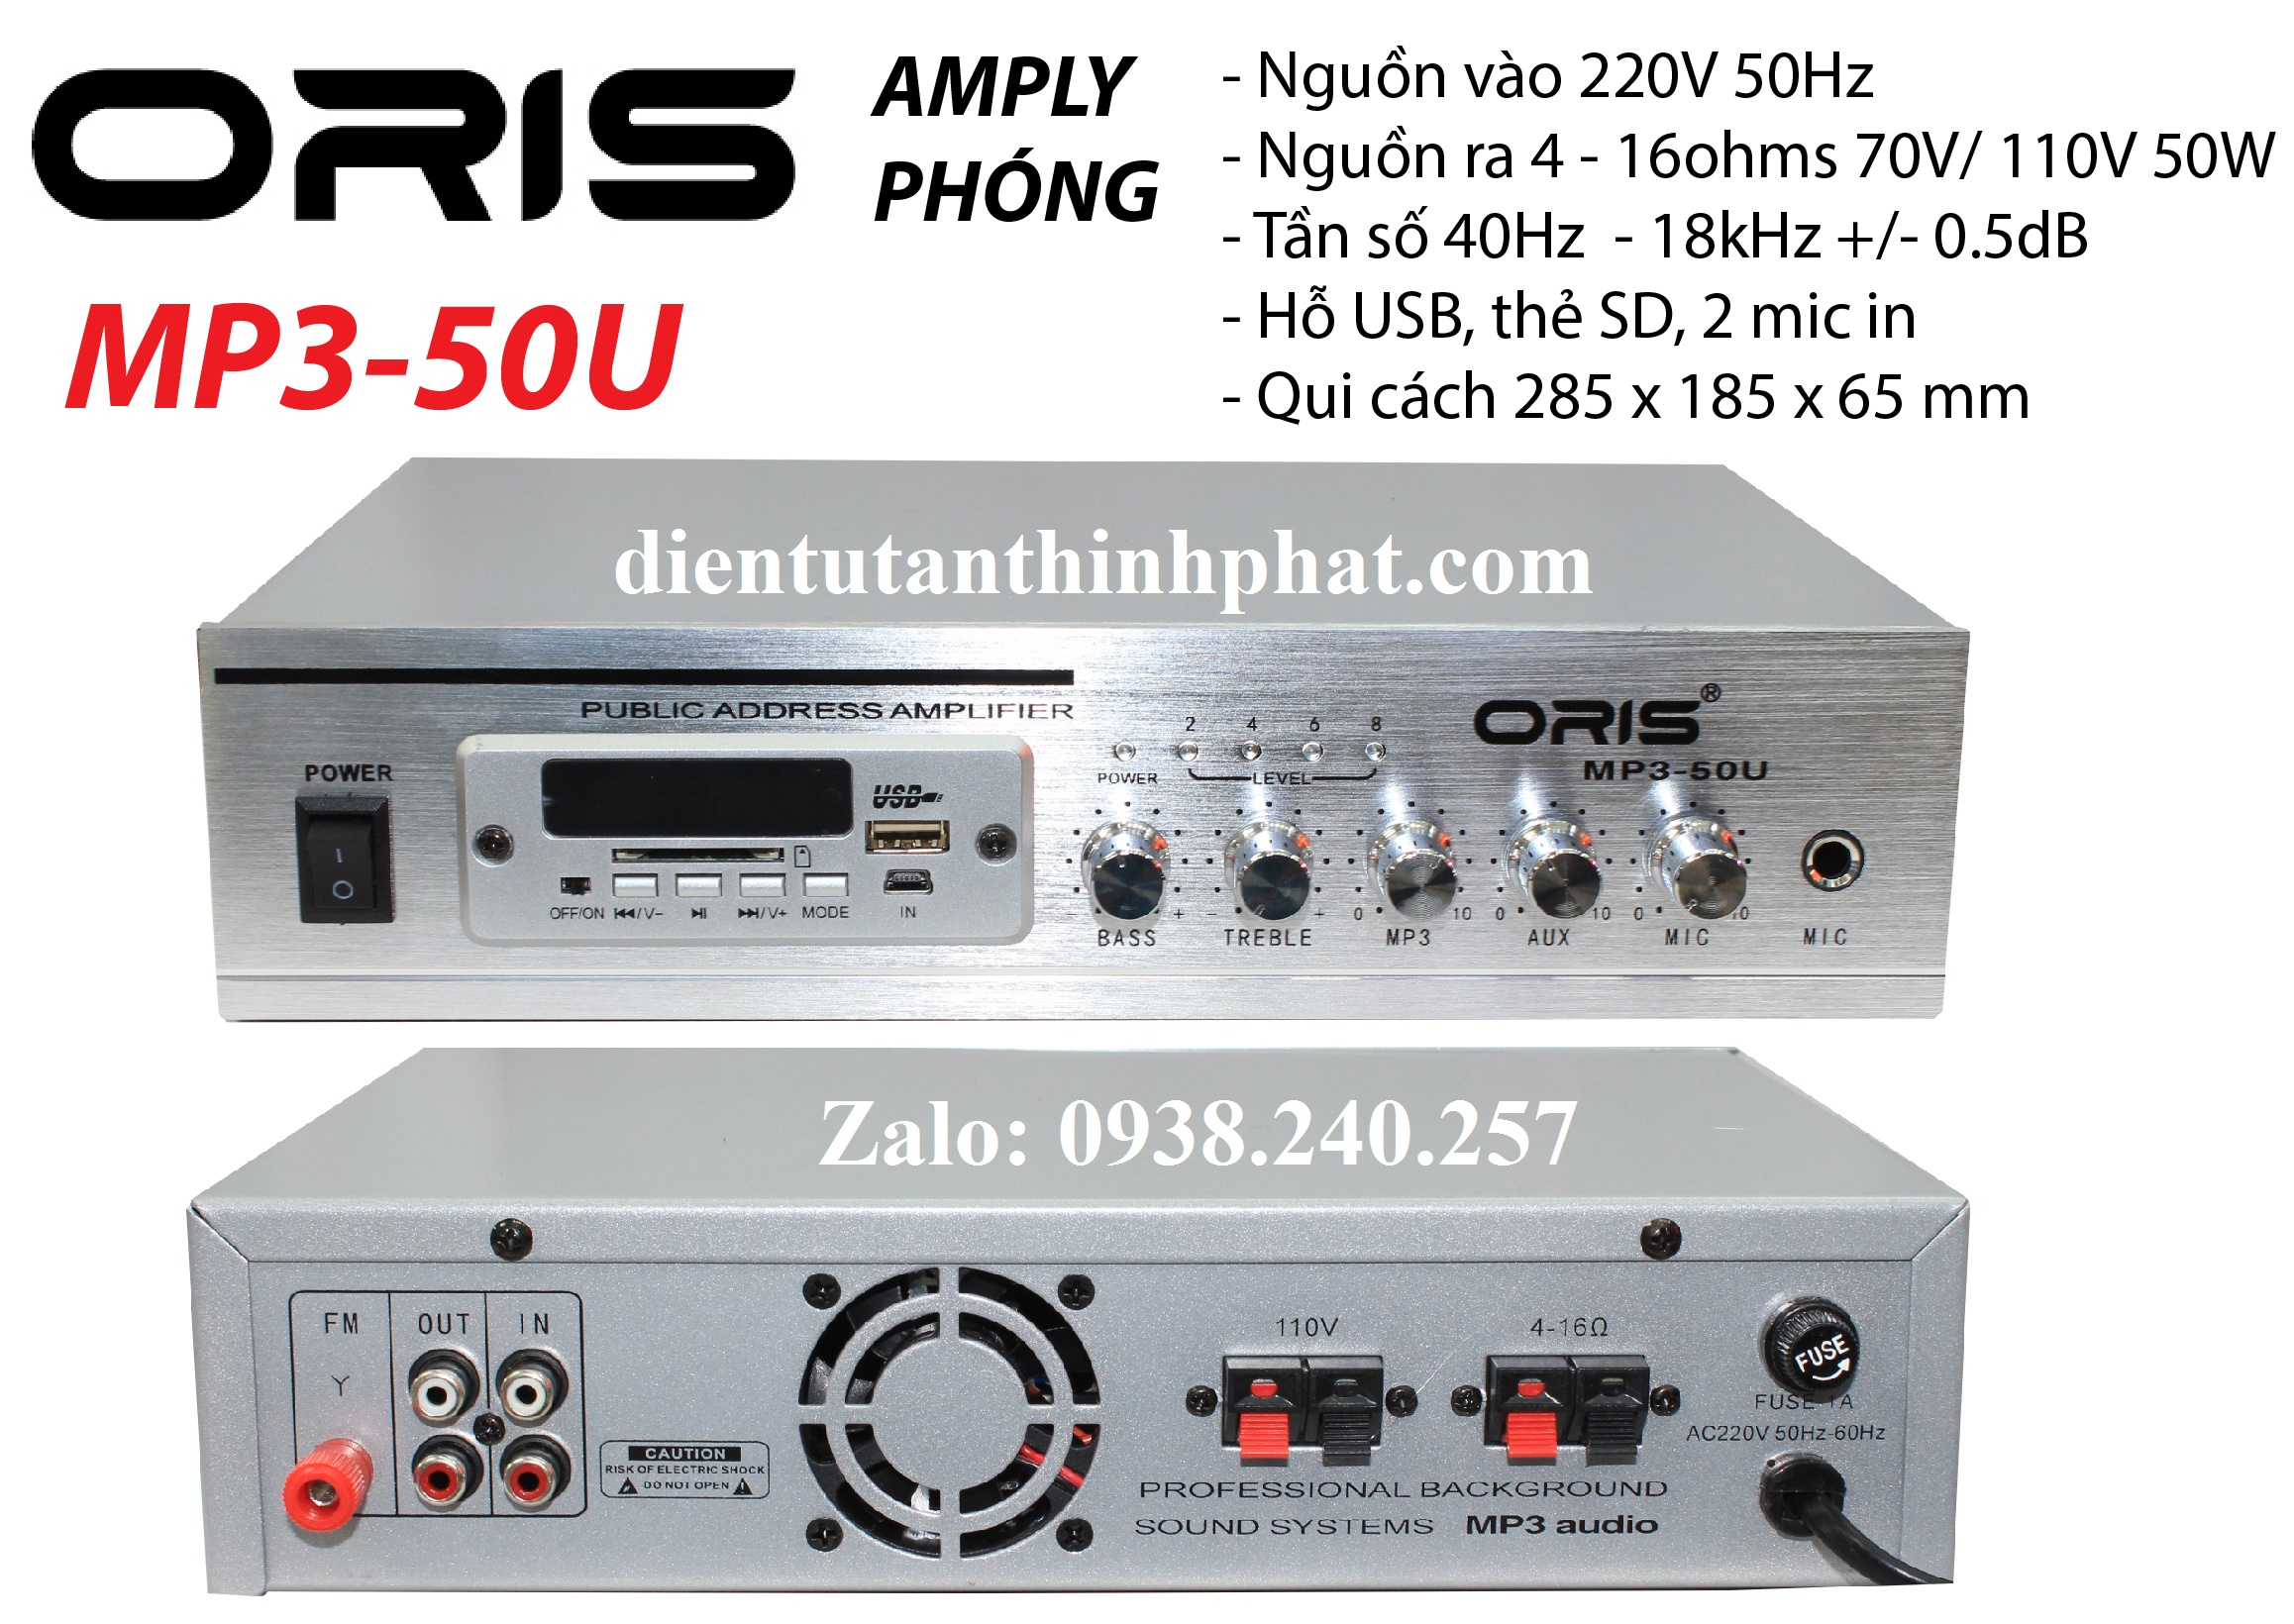 Amply phóng oris MP3-50U công suất 50w